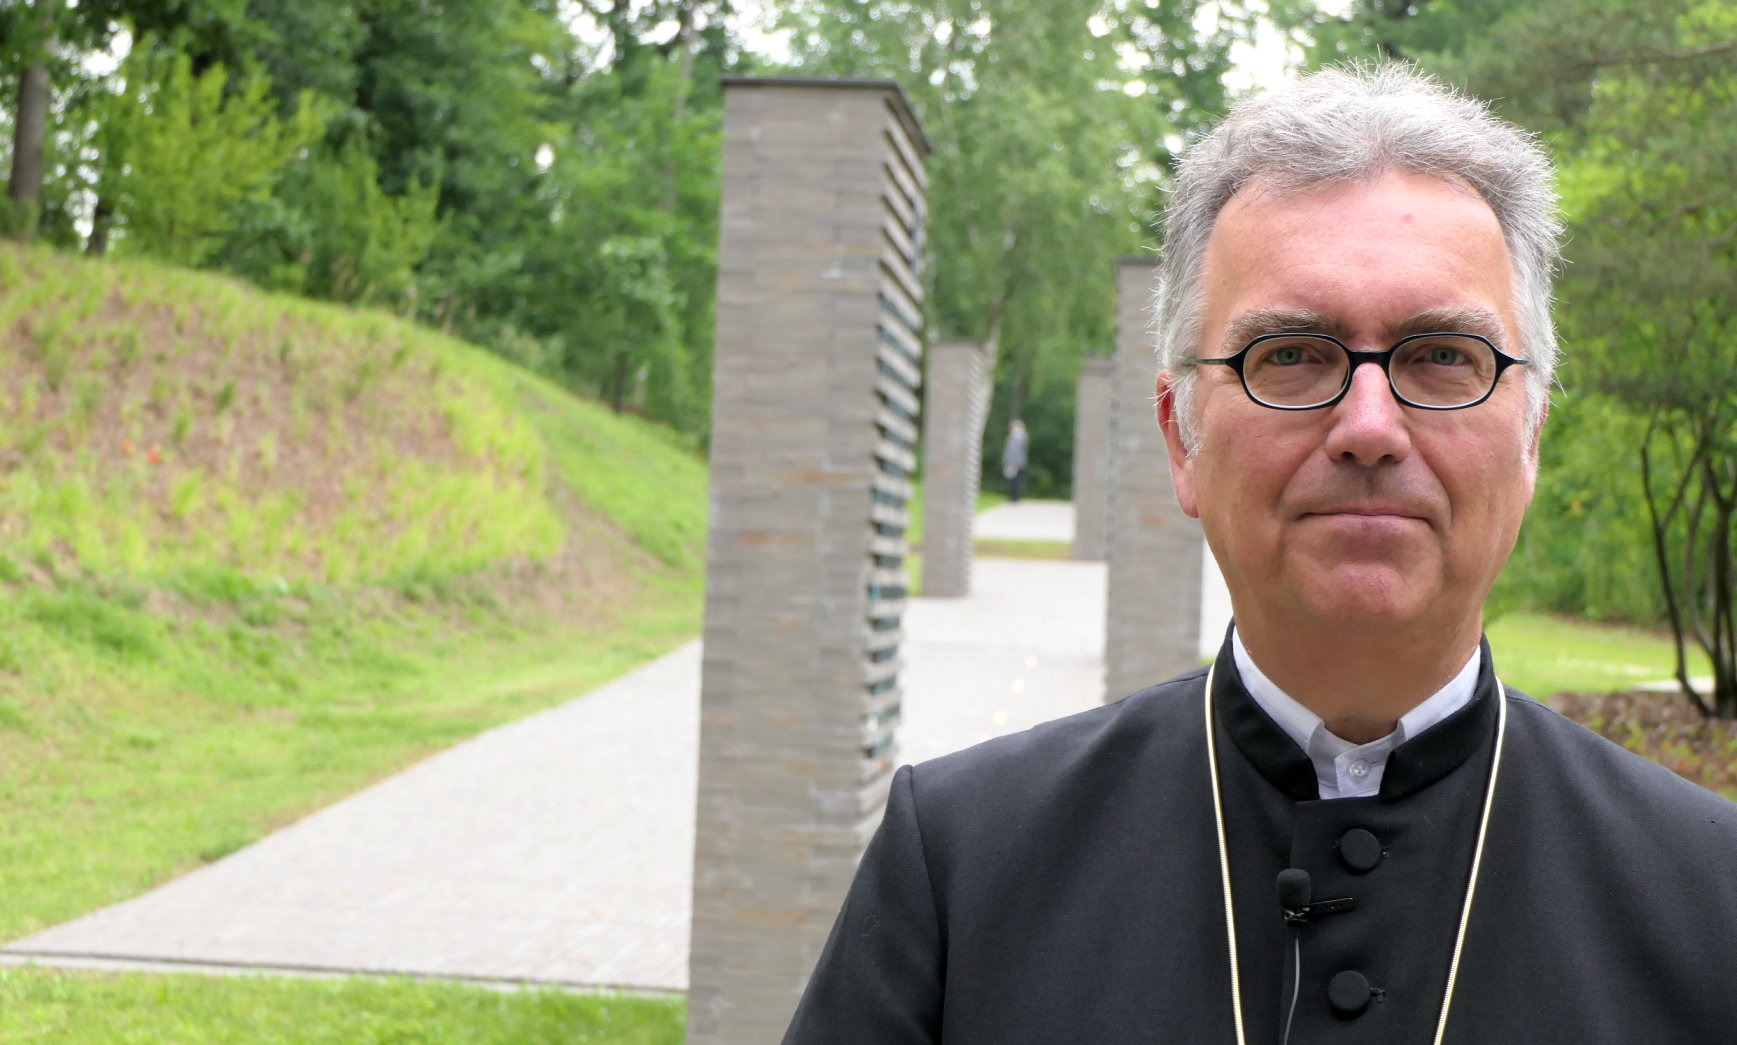 Evangelischer Militärbischof Sigurd Rink verlässt nach 6 Jahren Amtszeit die Militärseelsorge